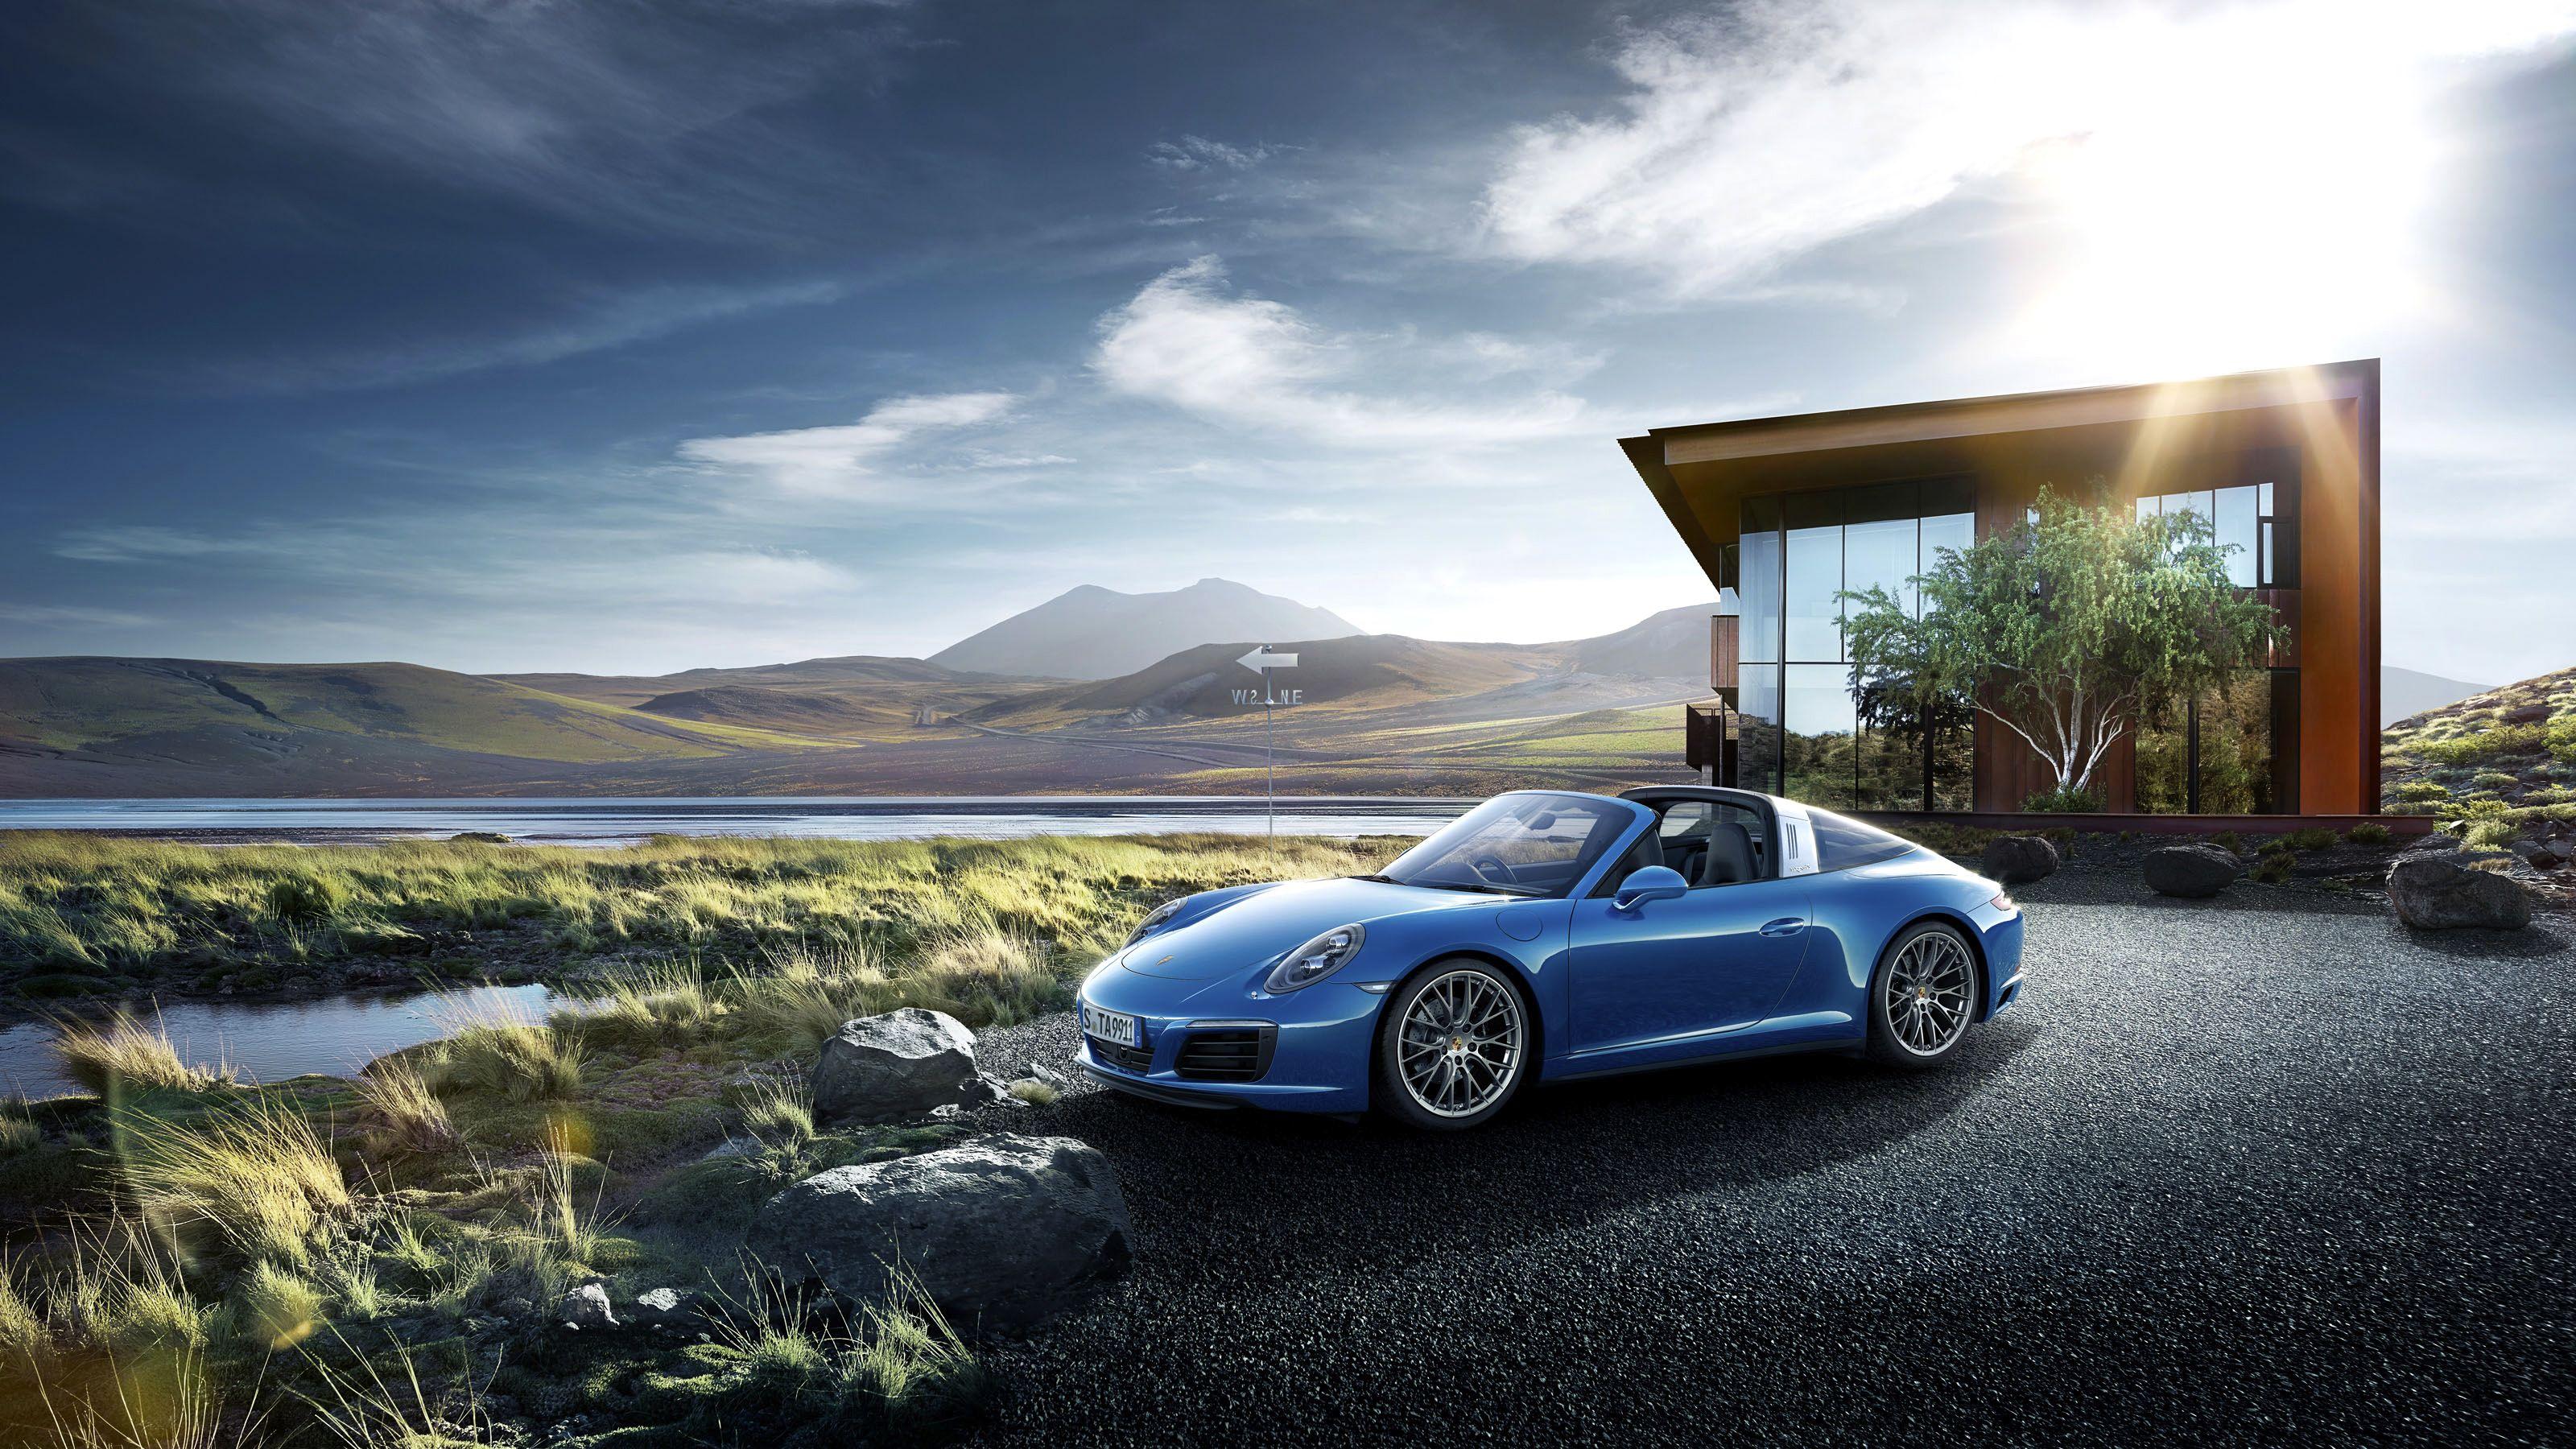 Porsche Cayman, HD Cars, 4k Wallpaper, Image, Background